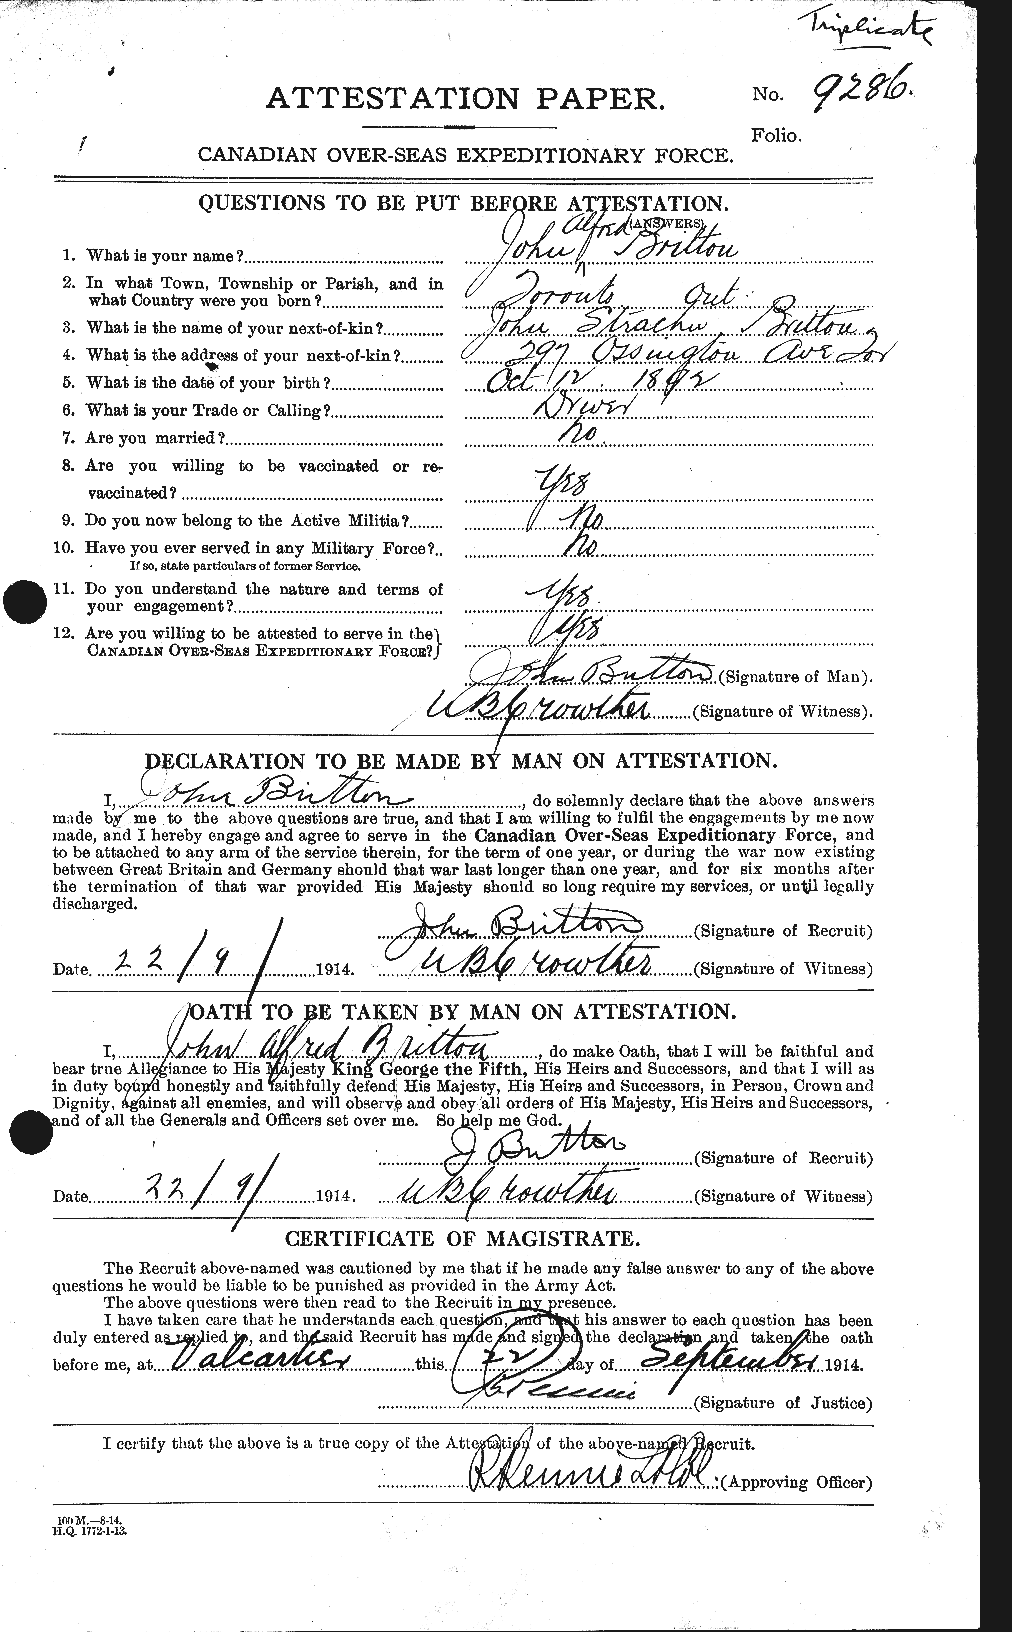 Dossiers du Personnel de la Première Guerre mondiale - CEC 261946a